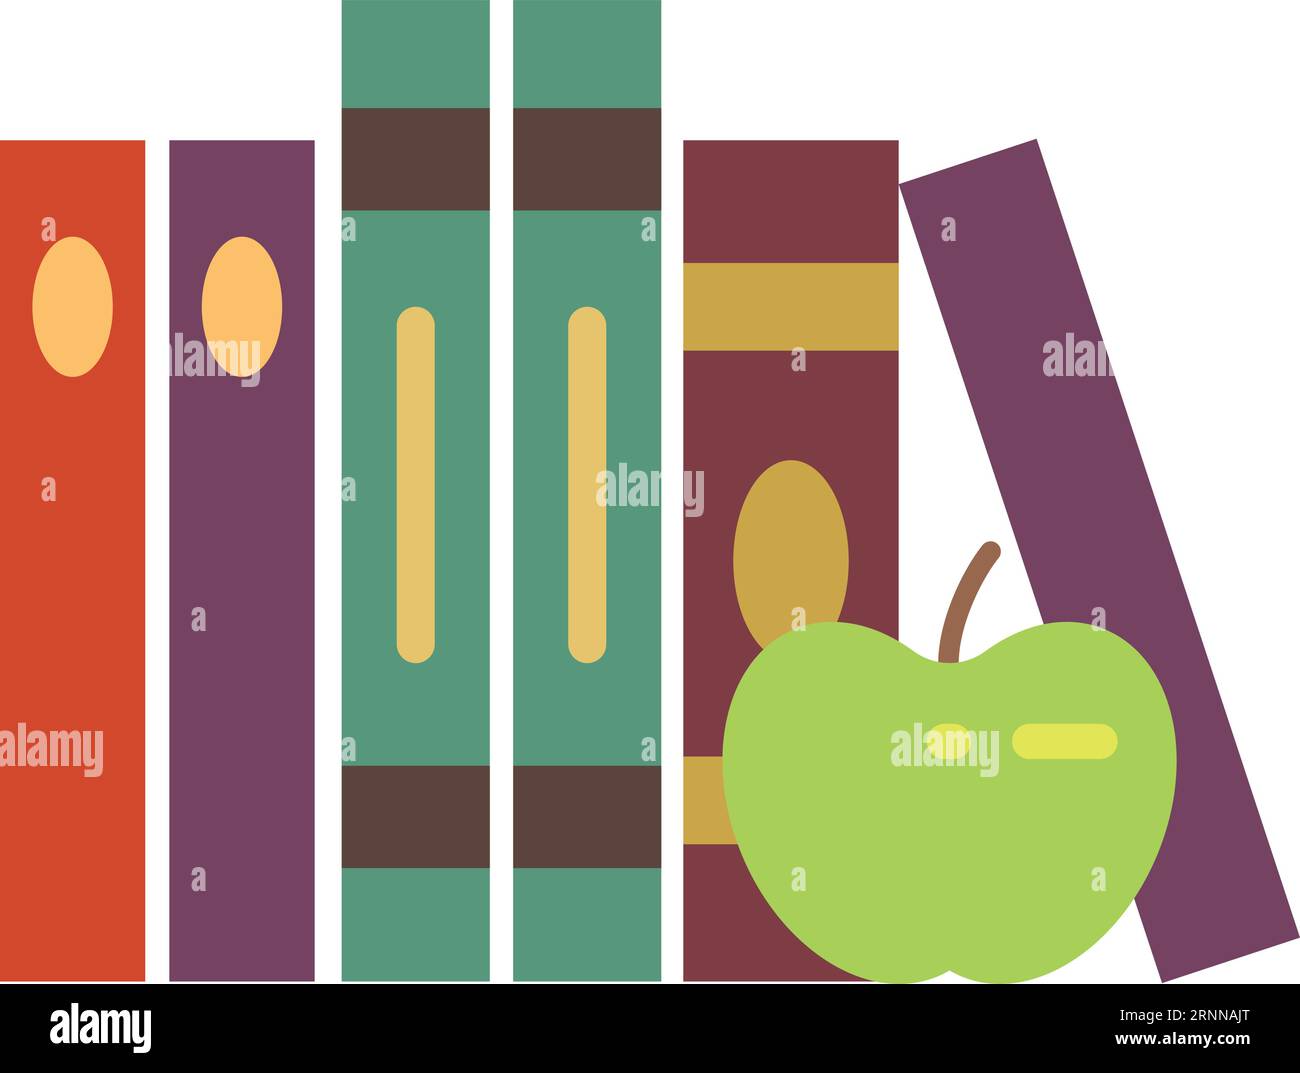 Buchregal mit grünem Apfel. Flaches Ausbildungssymbol Stock Vektor